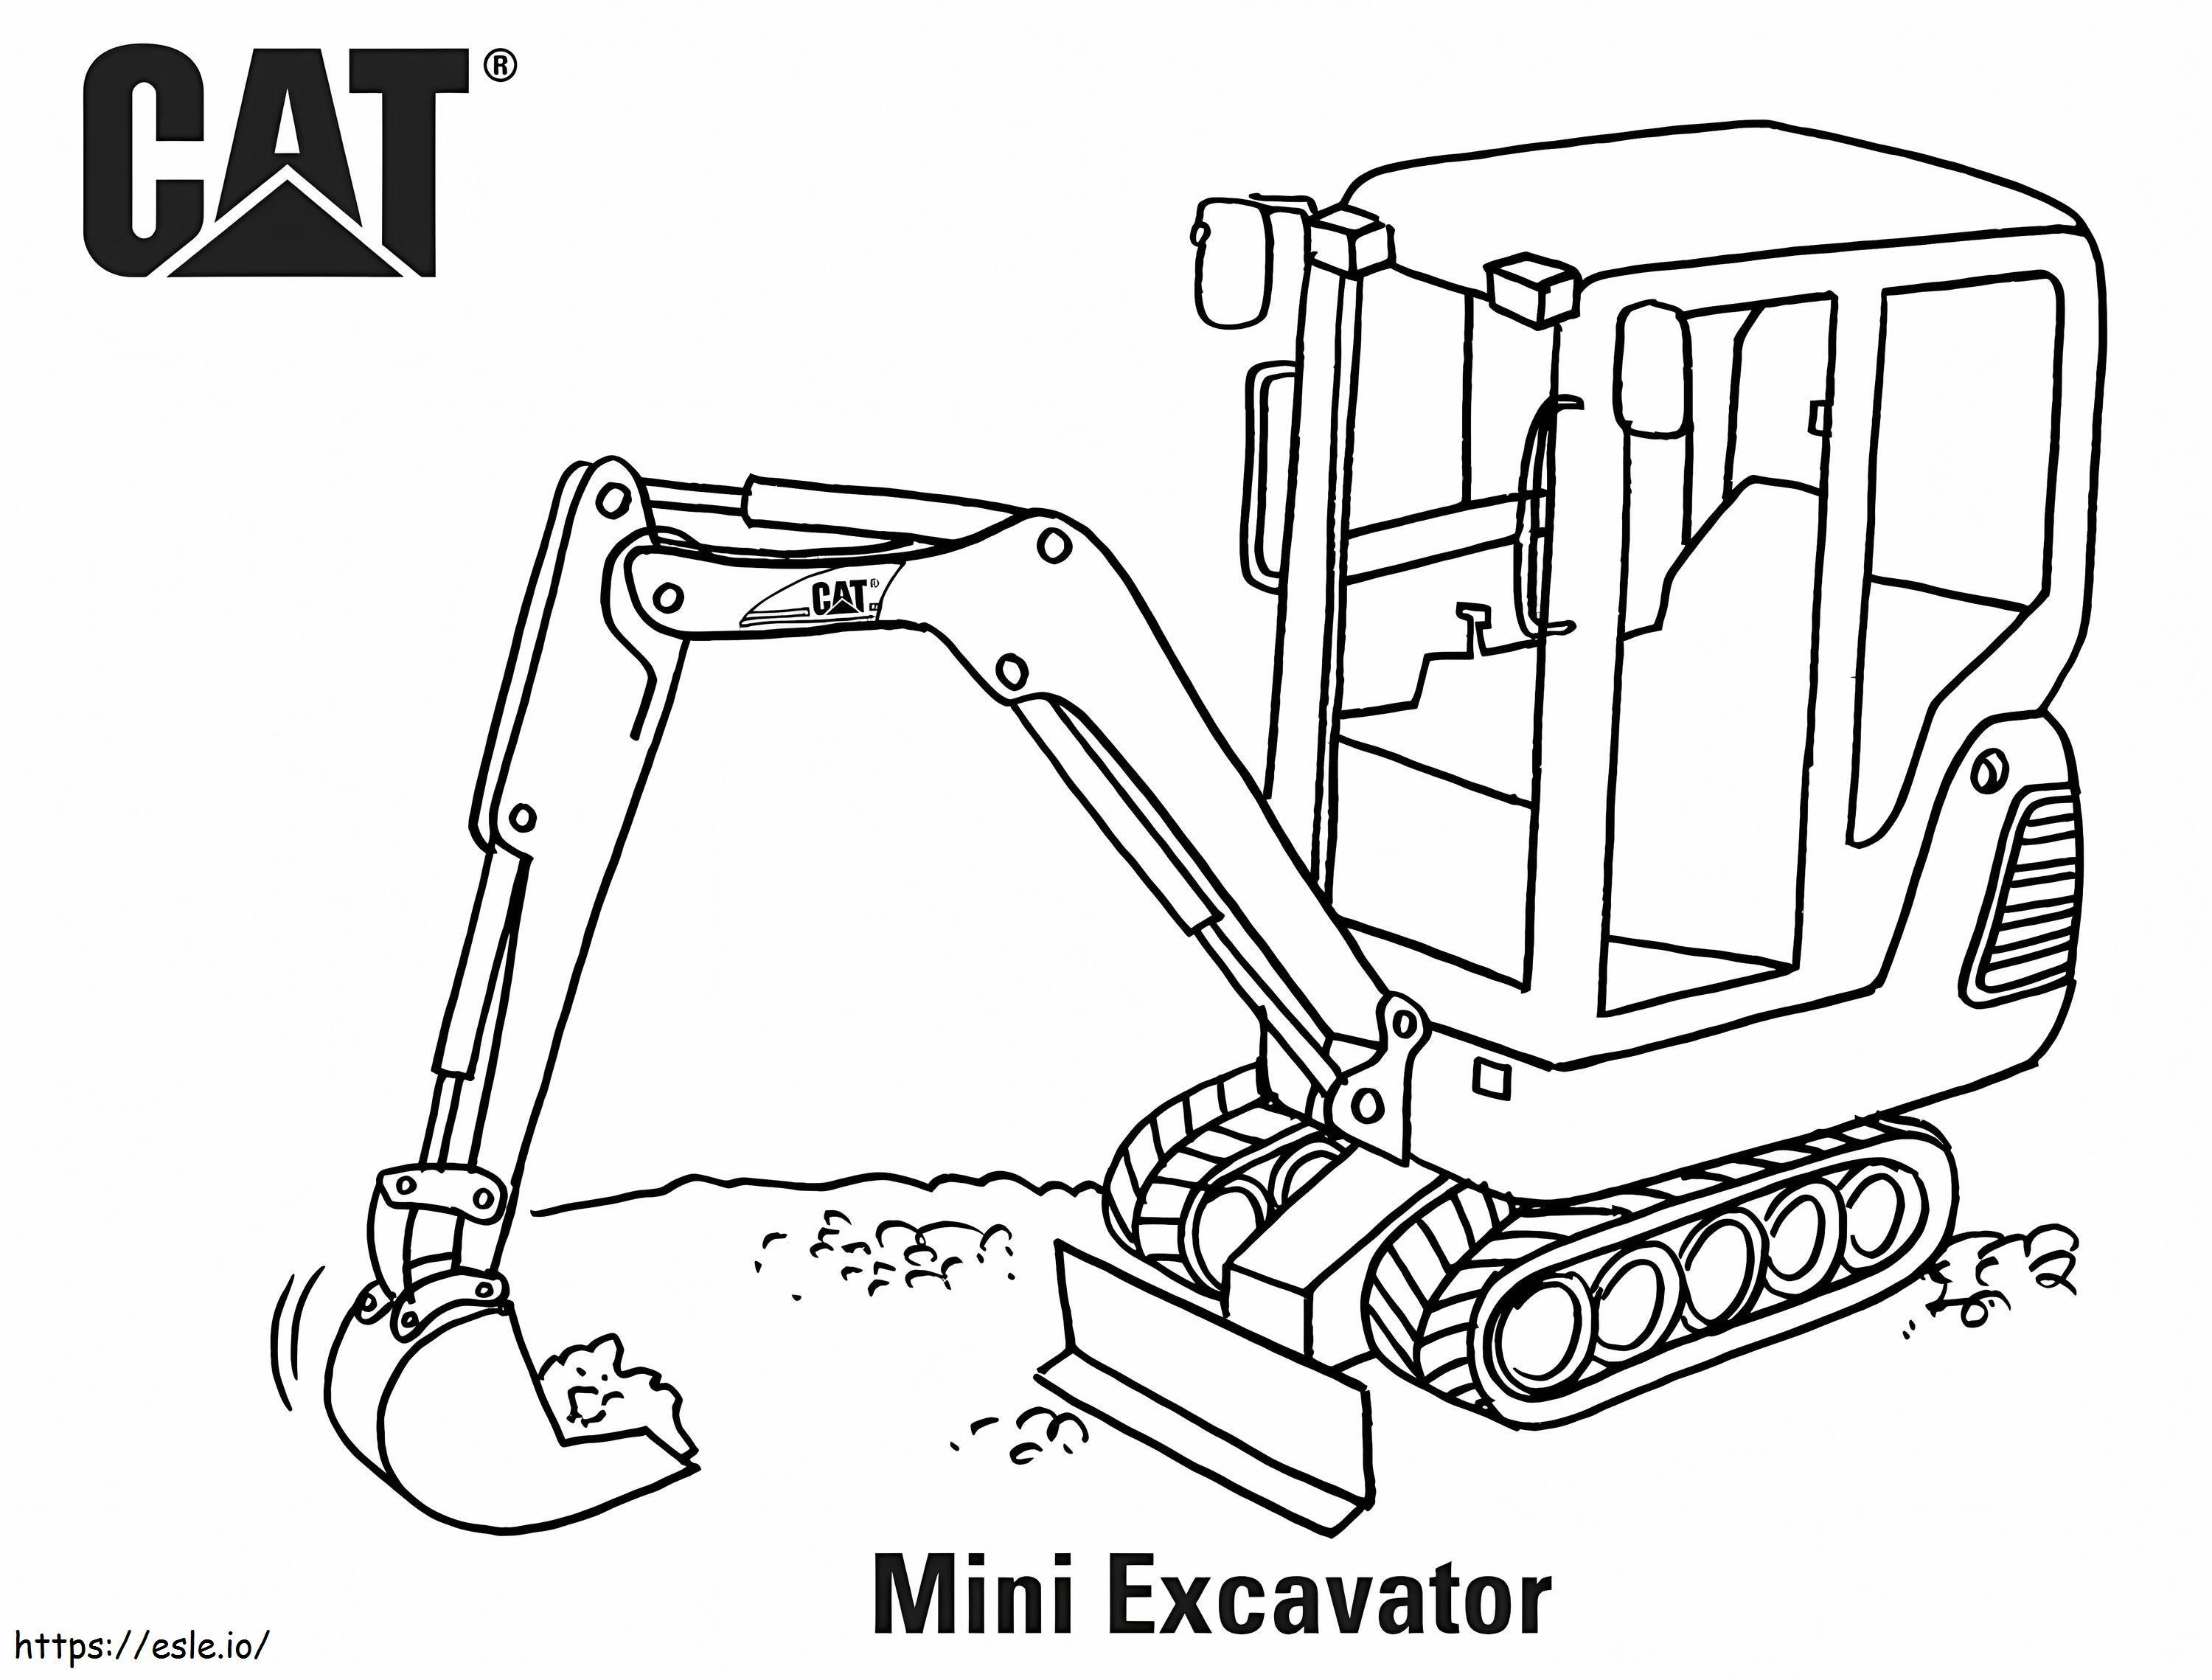 Cat Mini Excavator A4 E1600734804684 coloring page